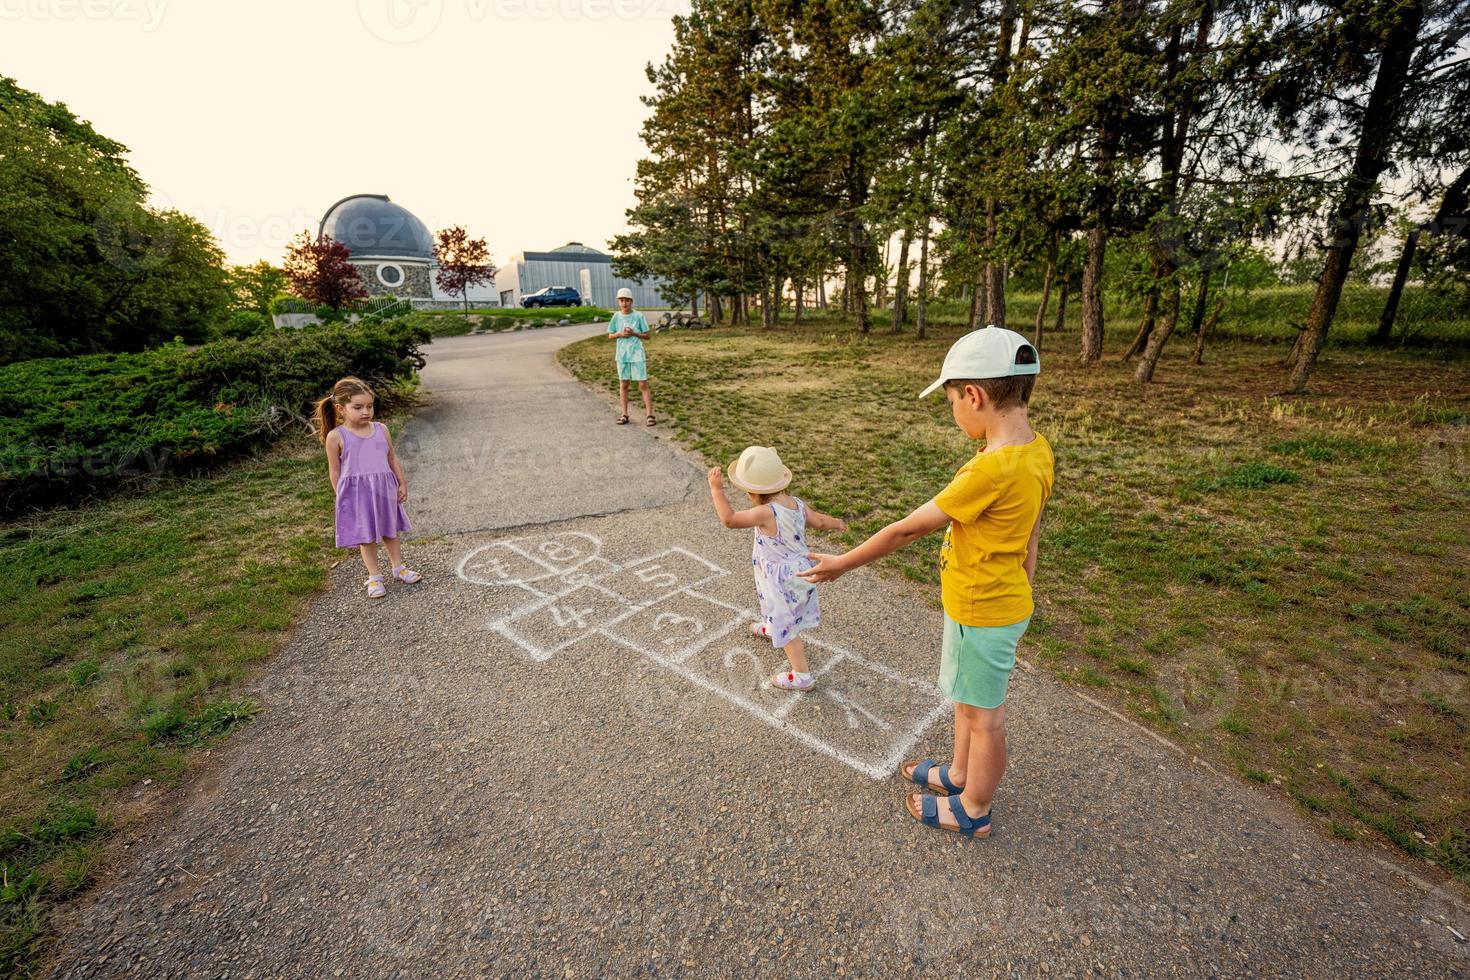 bambini giocando campana nel parco. bambini all'aperto attività. foto